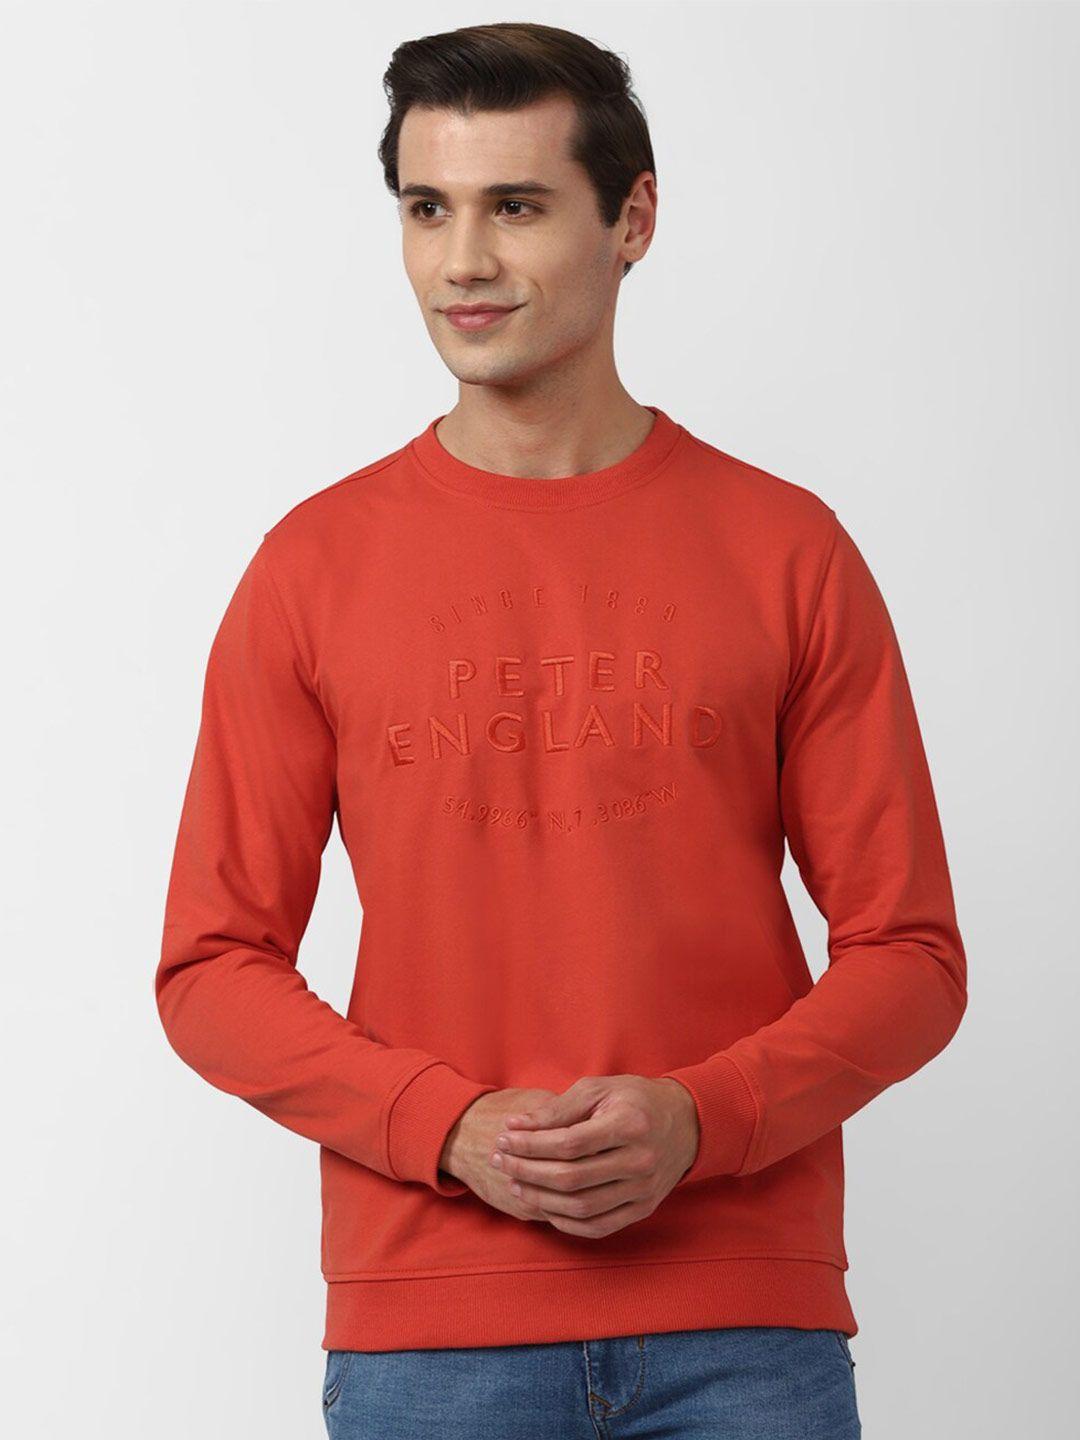 peter england casuals men orange embroidered sweatshirt